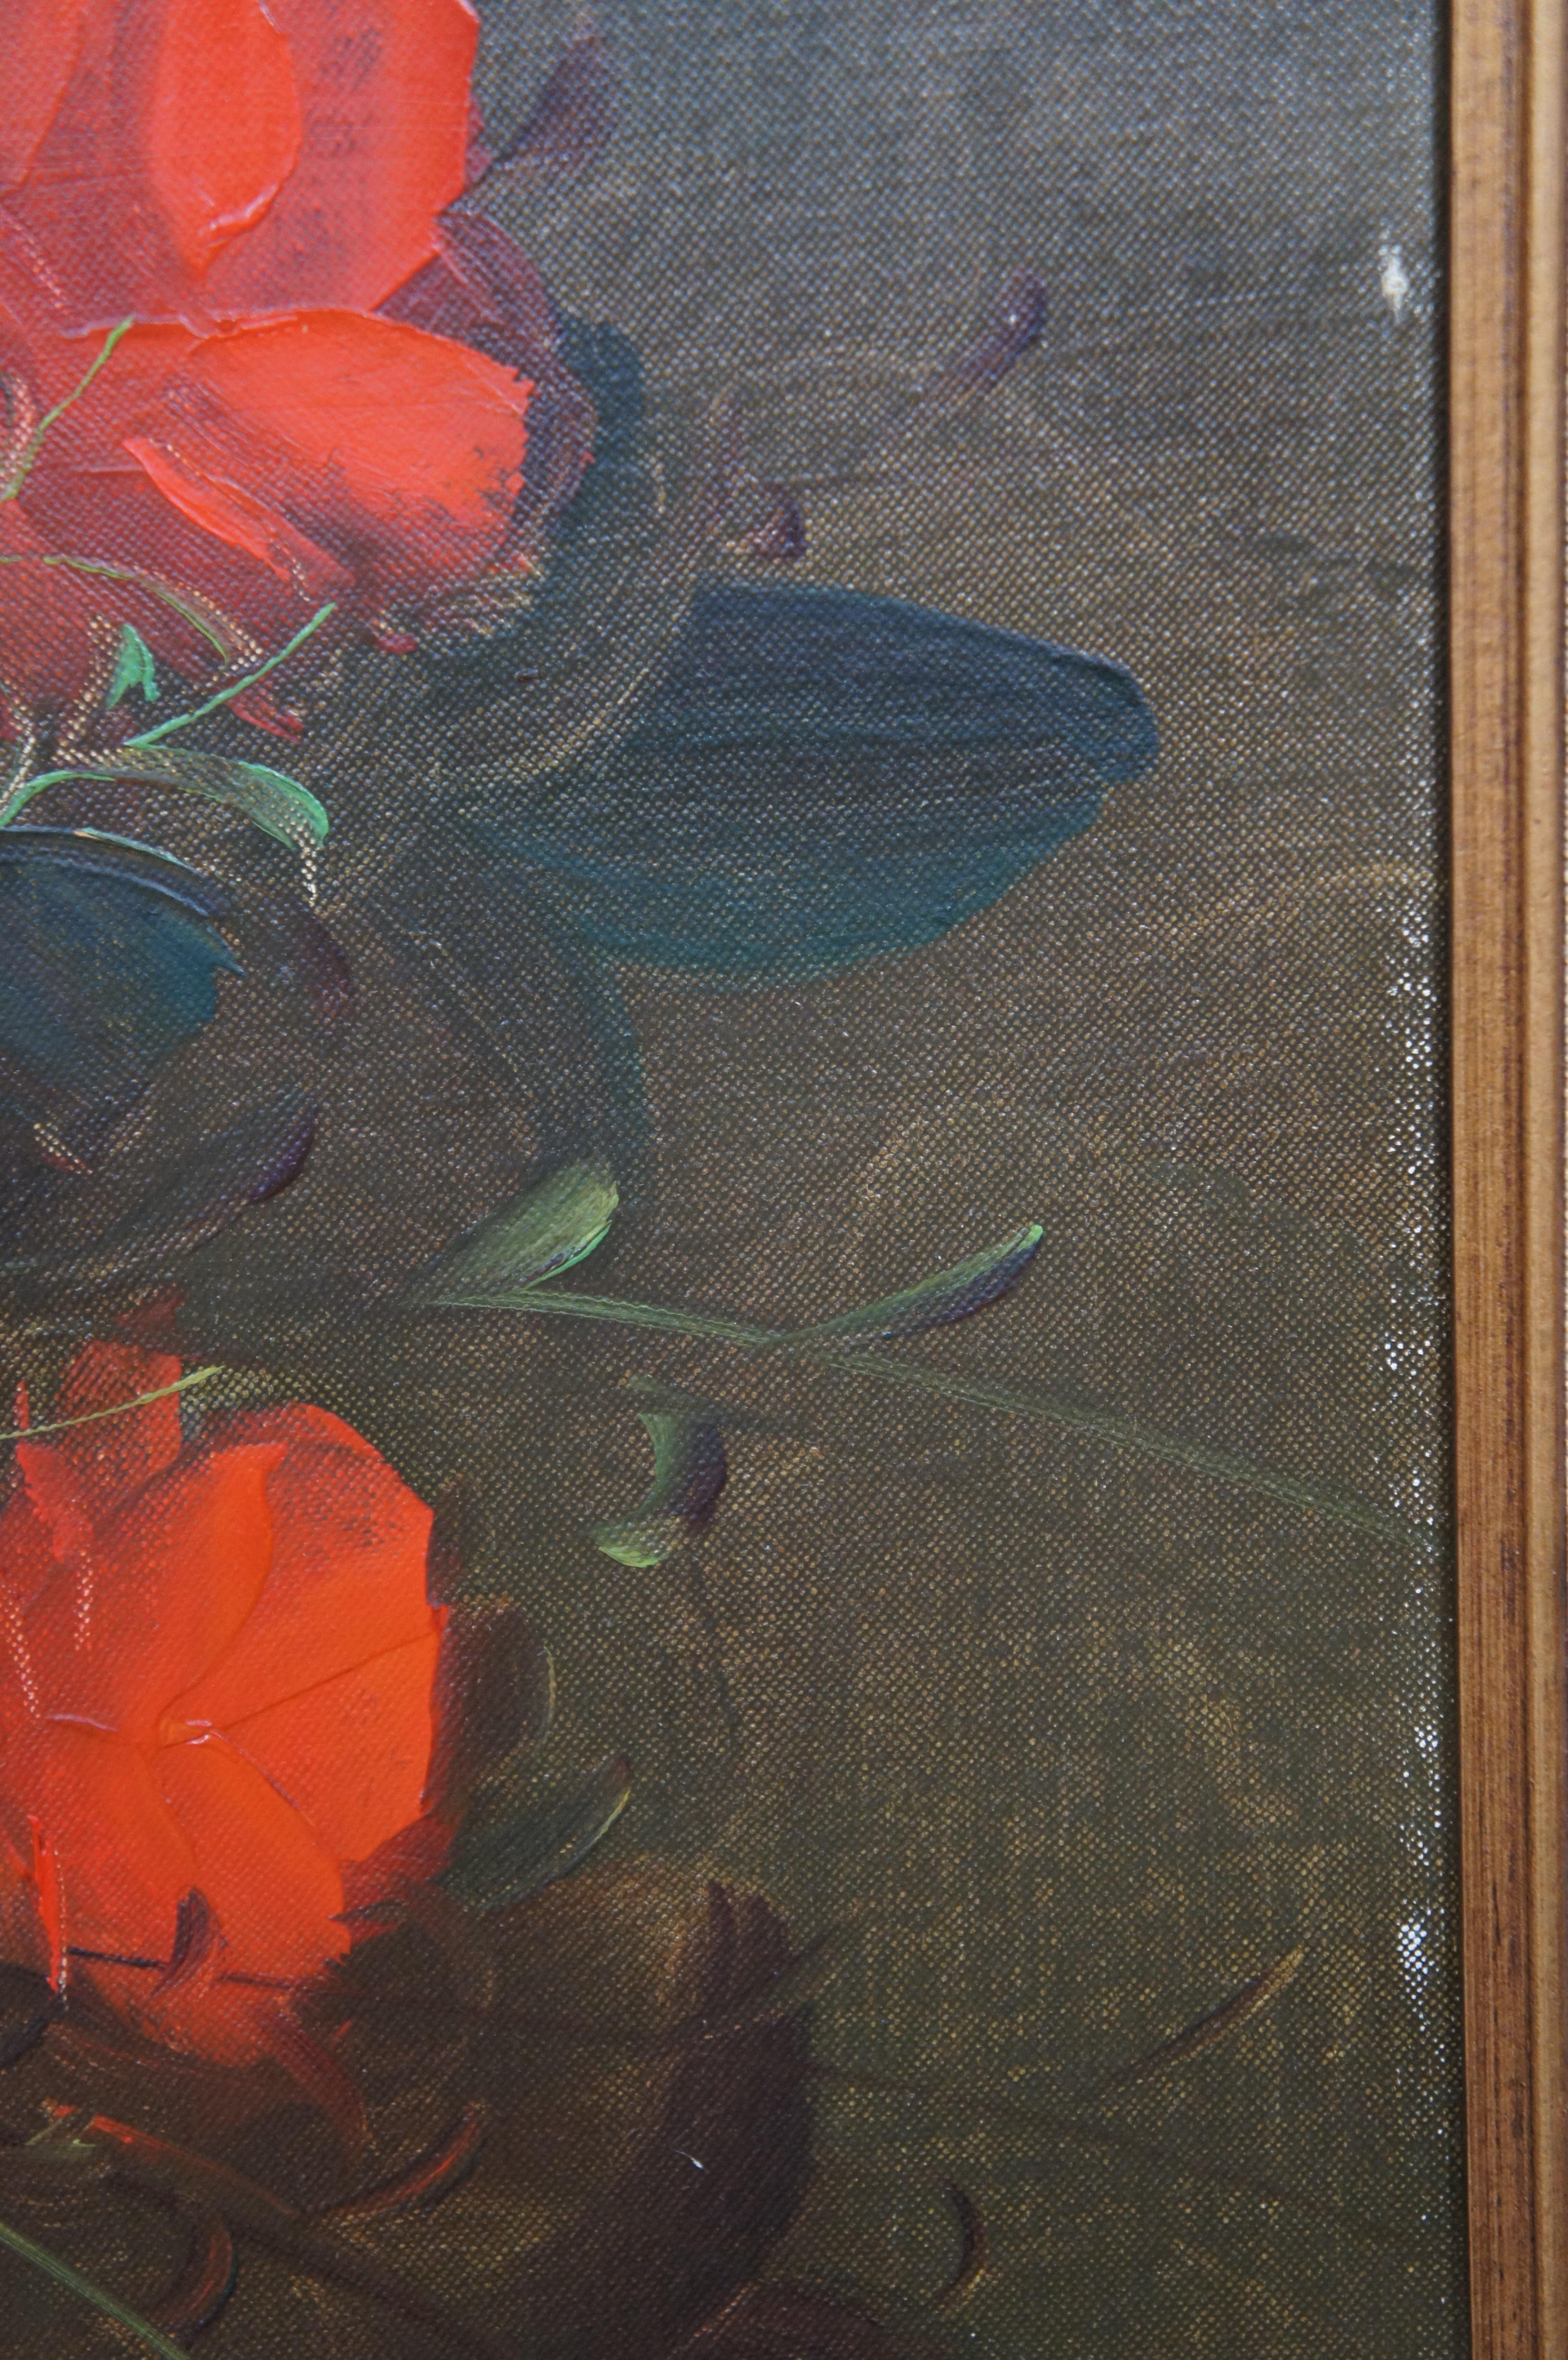 Nature morte florale vintage Suzanne - Peinture à l'huile sur toile - Bouquet de roses orange 44